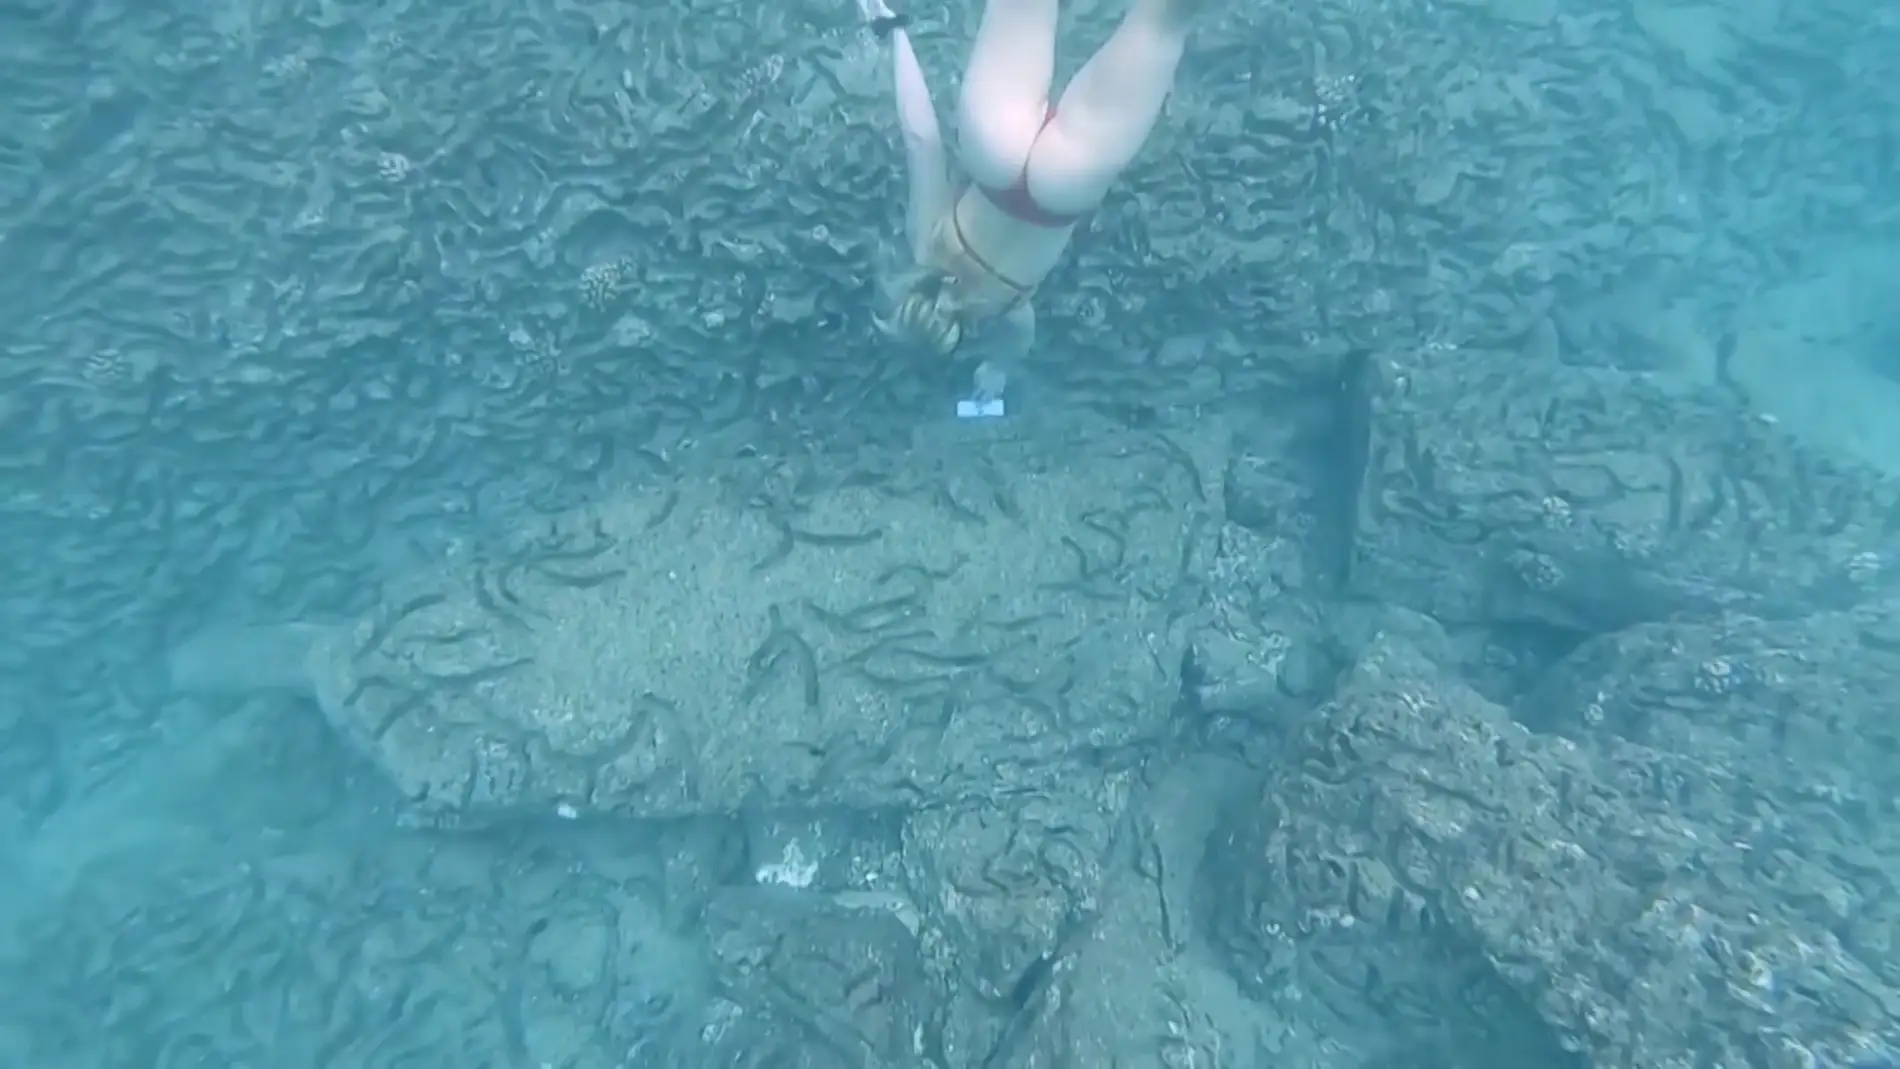 Encuentran un iPhone bajo el agua